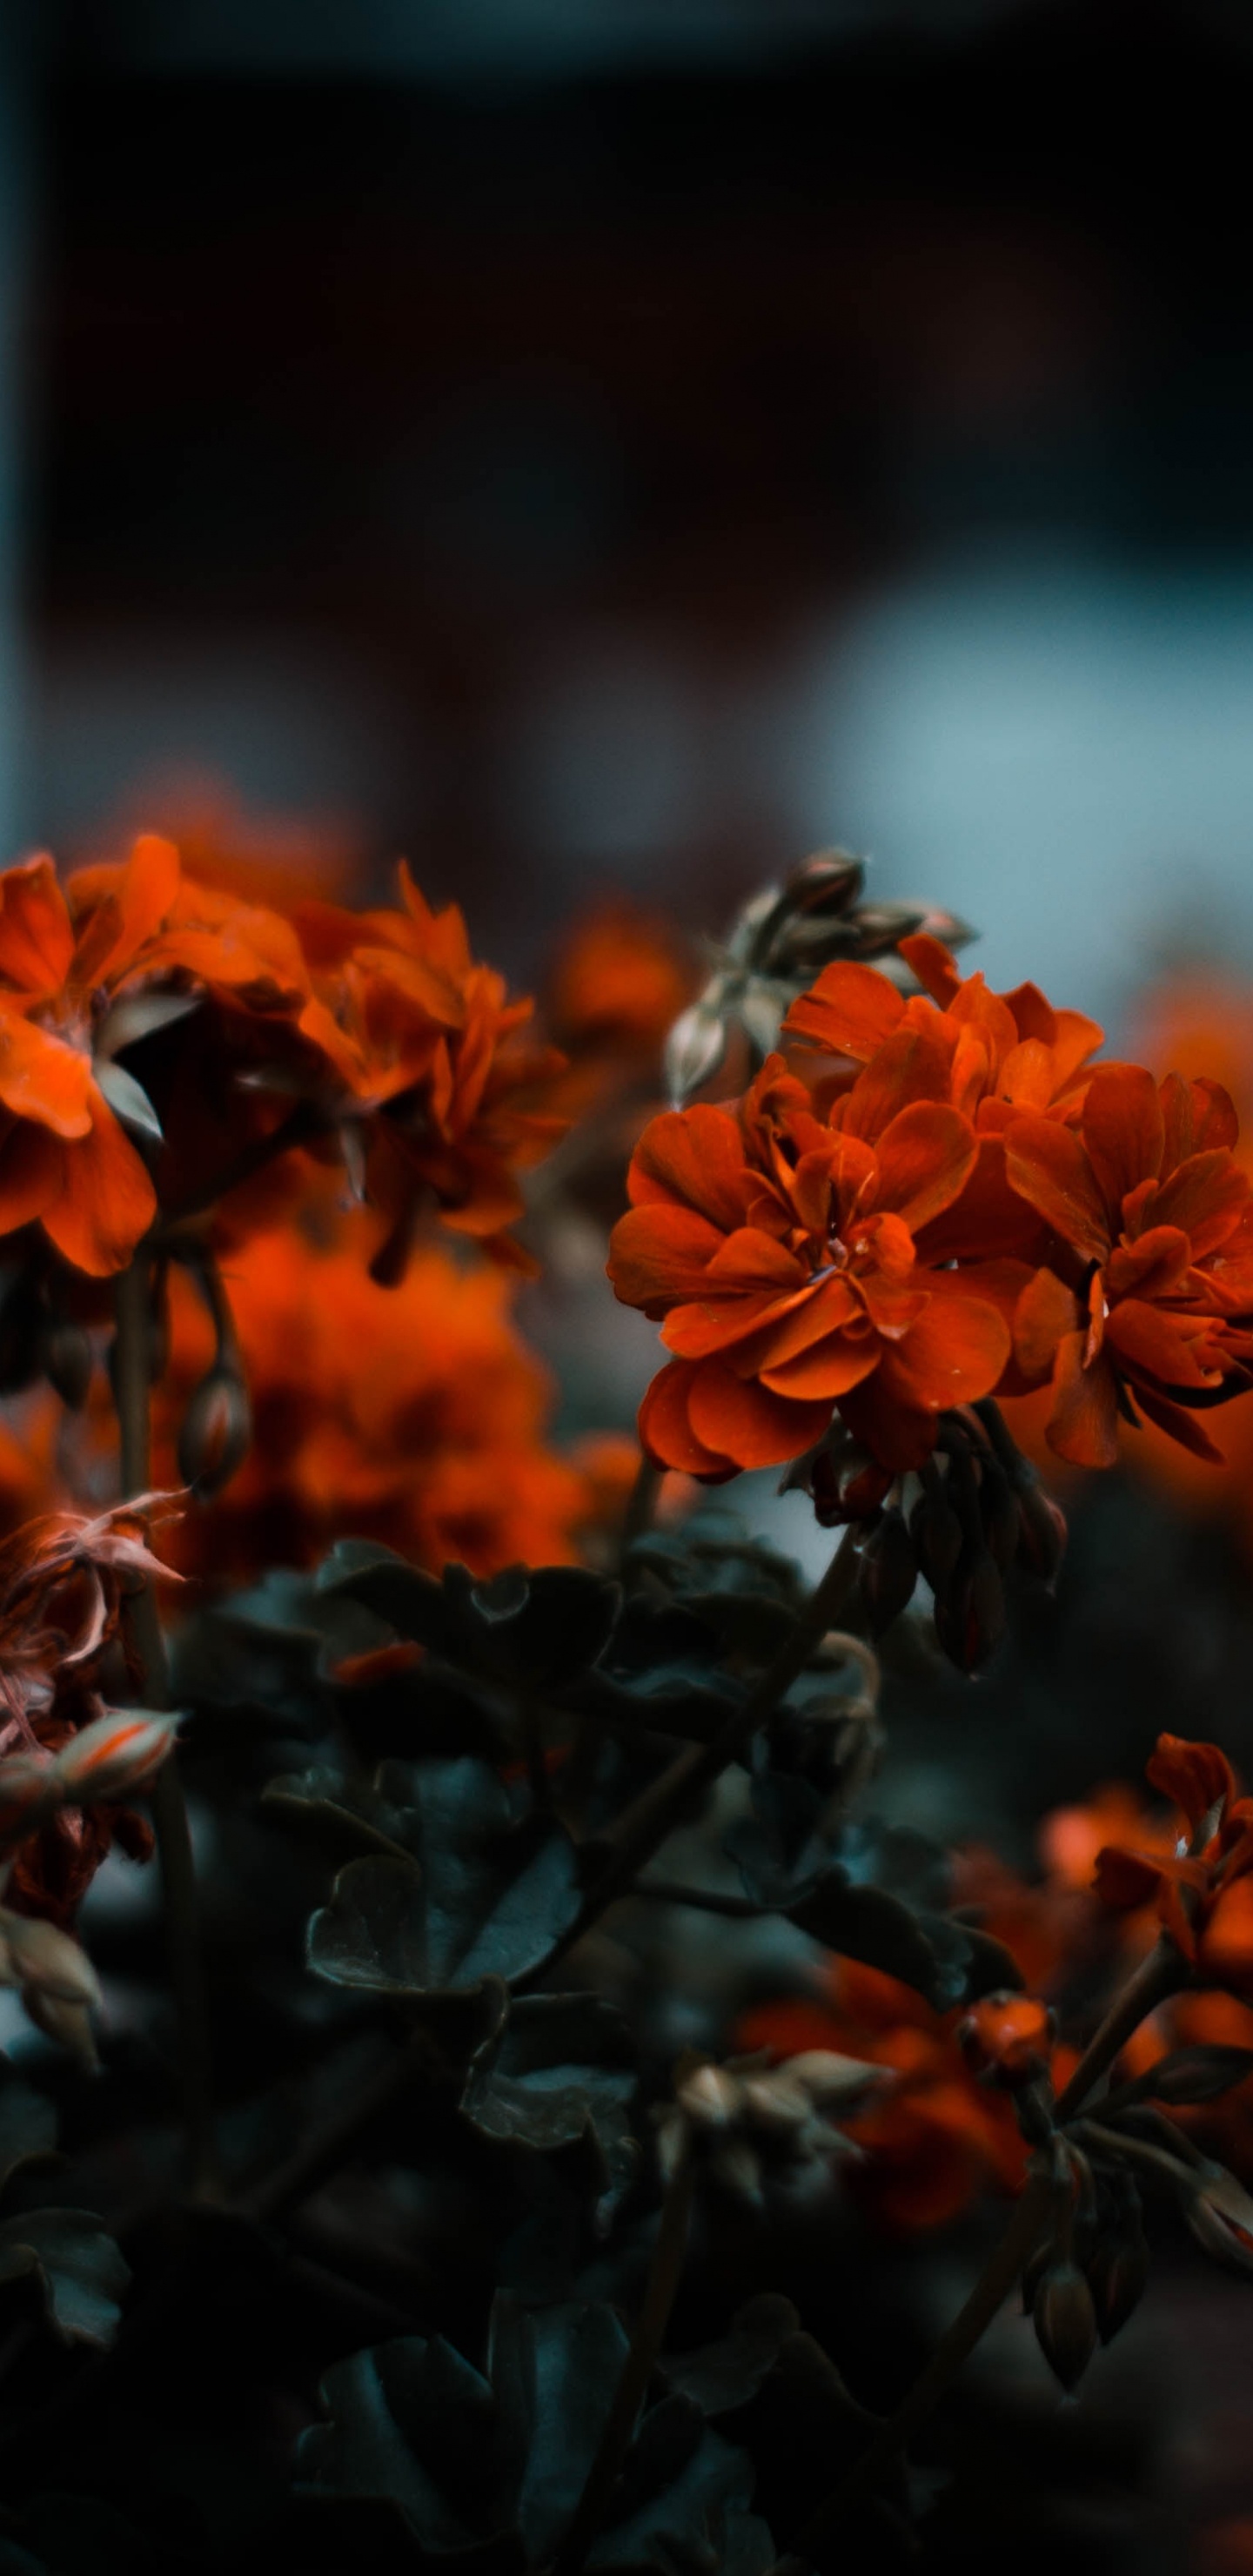 Orange Flowers in Tilt Shift Lens. Wallpaper in 1440x2960 Resolution